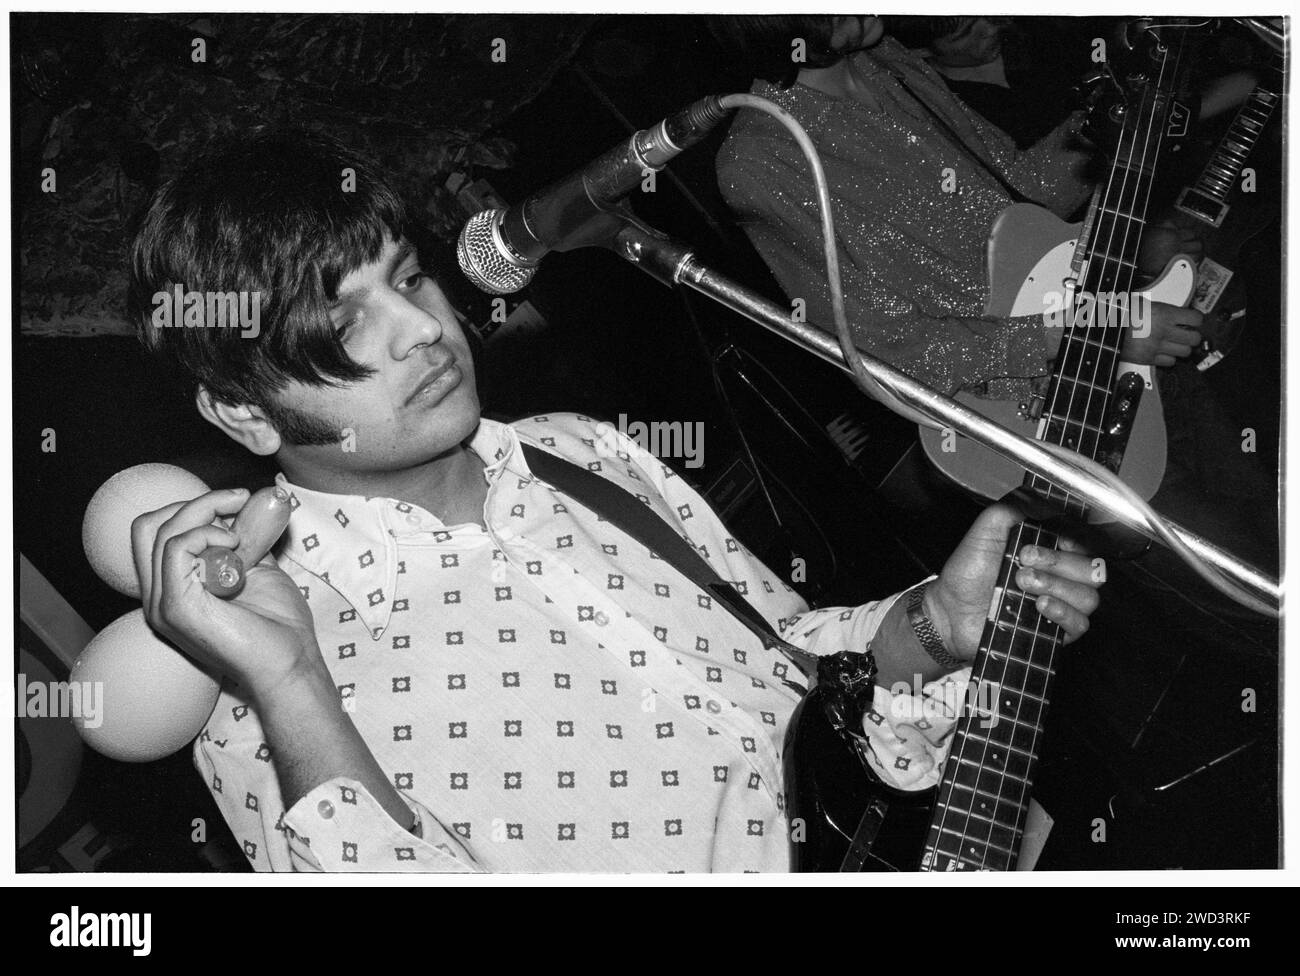 Tjinder Singh di Cornershop suona dal vivo al leggendario TJ's di Newport, Galles, Regno Unito il 31 gennaio 1994. Foto: Rob Watkins. INFO: Cornershop, formatosi nel 1991, è un gruppo indie rock britannico guidato da Tjinder Singh e Ben Ayres. Rinomati per la loro fusione di elementi indie rock, alternative e musica indiana, hanno raggiunto il successo mainstream con il successo "Brimful of Asha", che riflette il loro approccio musicale eclettico e innovativo. Foto Stock